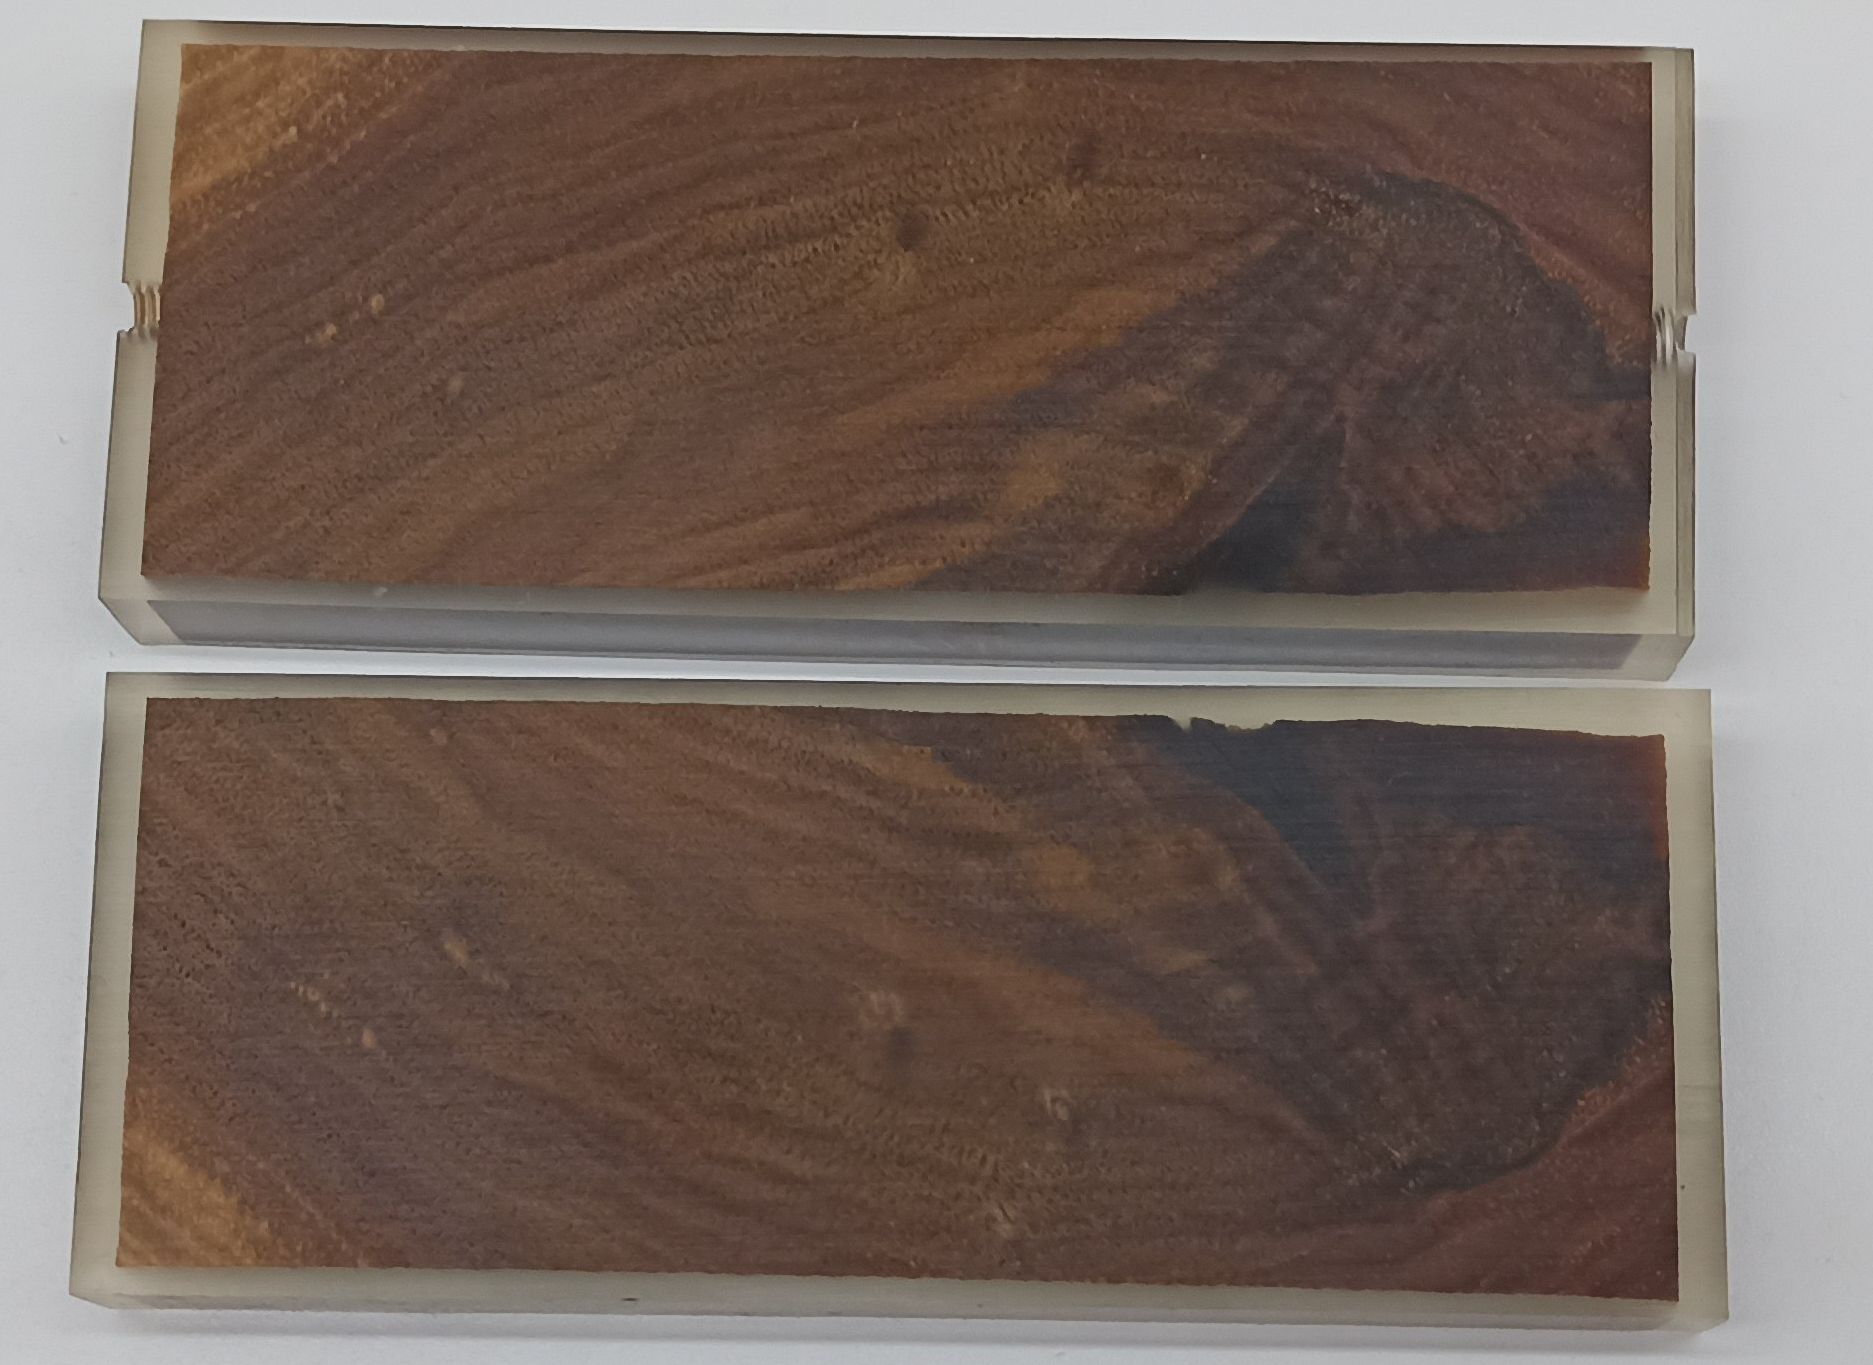 Stabilizované dřevo - ořech  125 x 45 x 12 mm Příložky